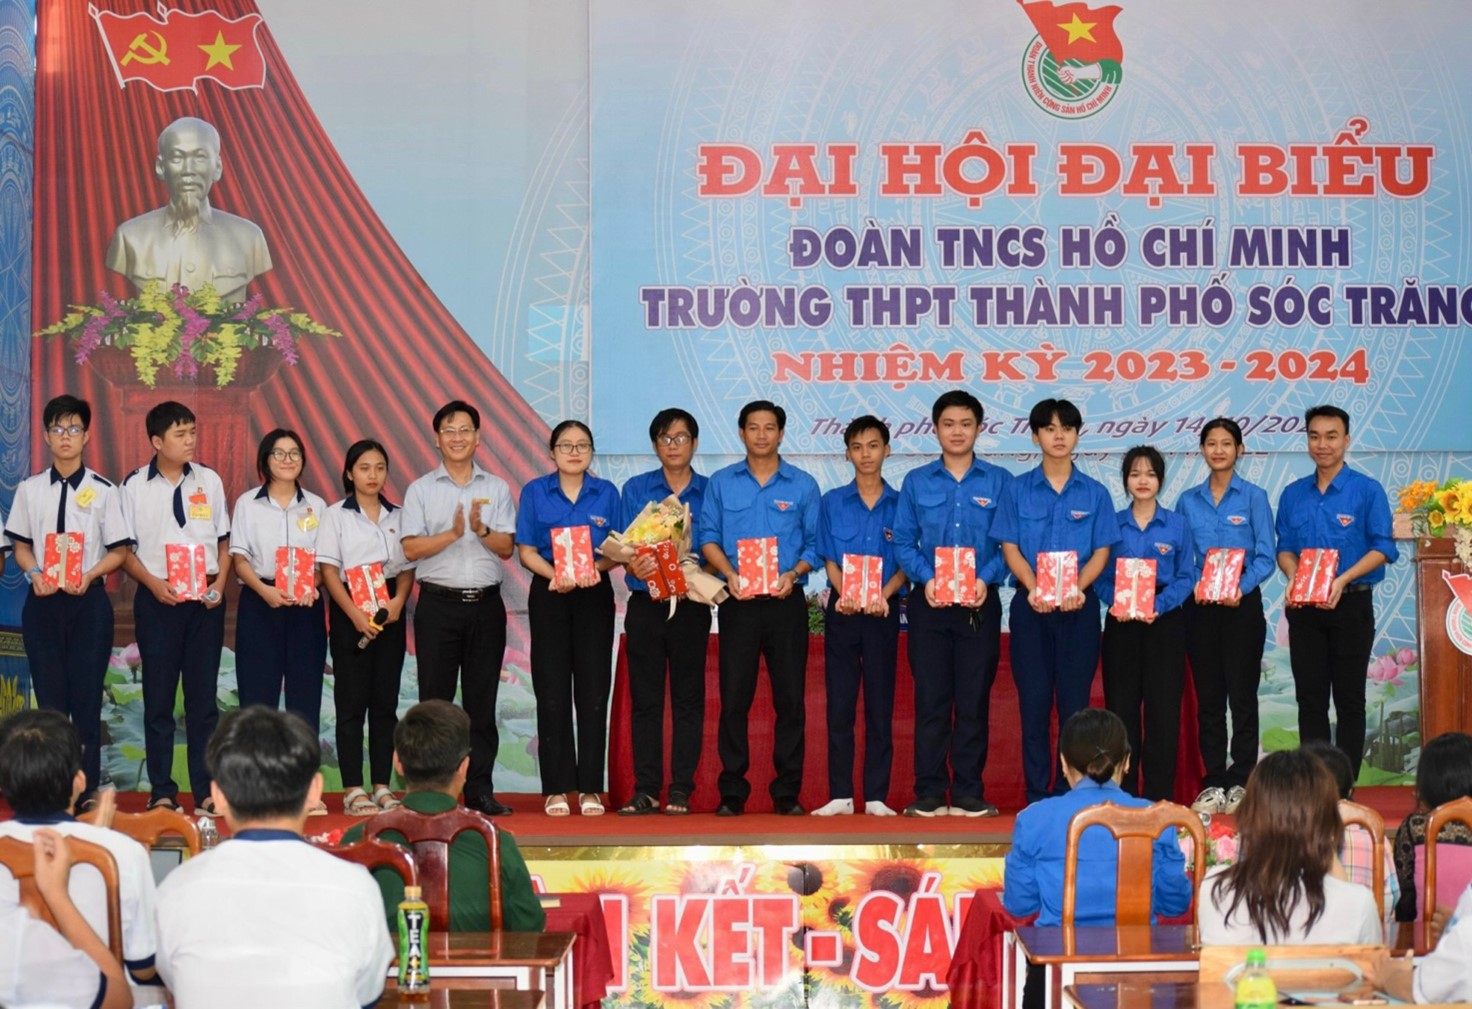 Đại hội đại biểu Đoàn TNCS Hồ Chí Minh trường THPT Thành Phố Sóc Trăng nhiệm kỳ 2023 – 2024